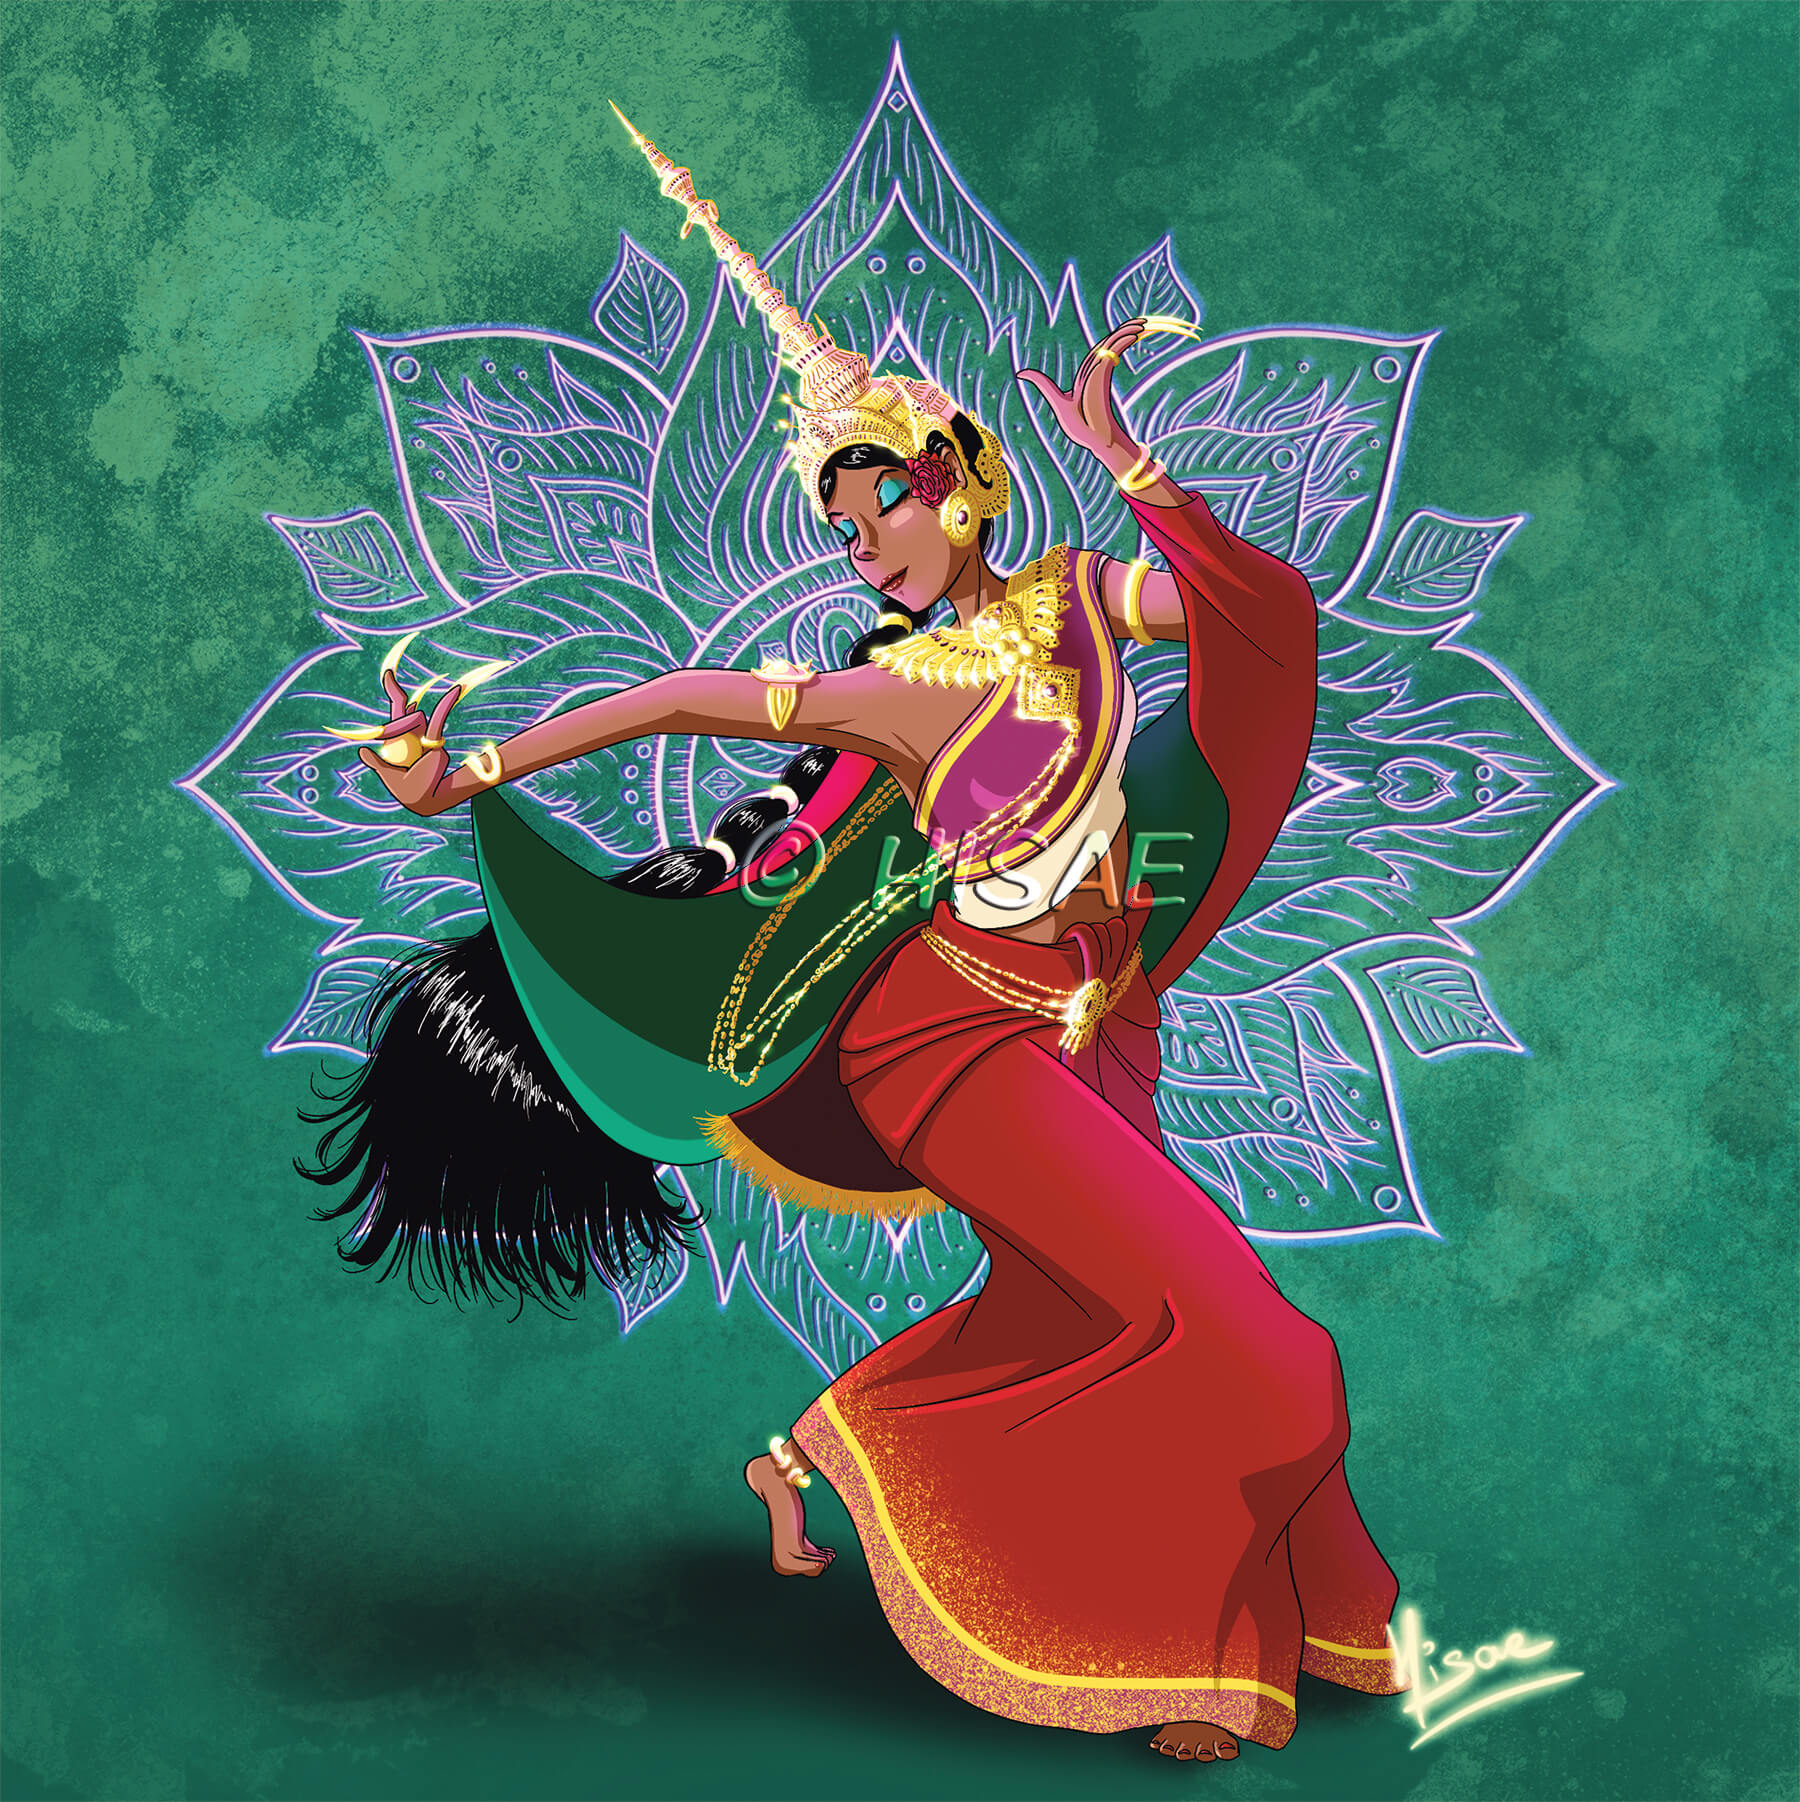 Dessin numérique d'une danseuse thaïlandaise en costume traditionnel sur mandala en fond ©Hisae illustrations